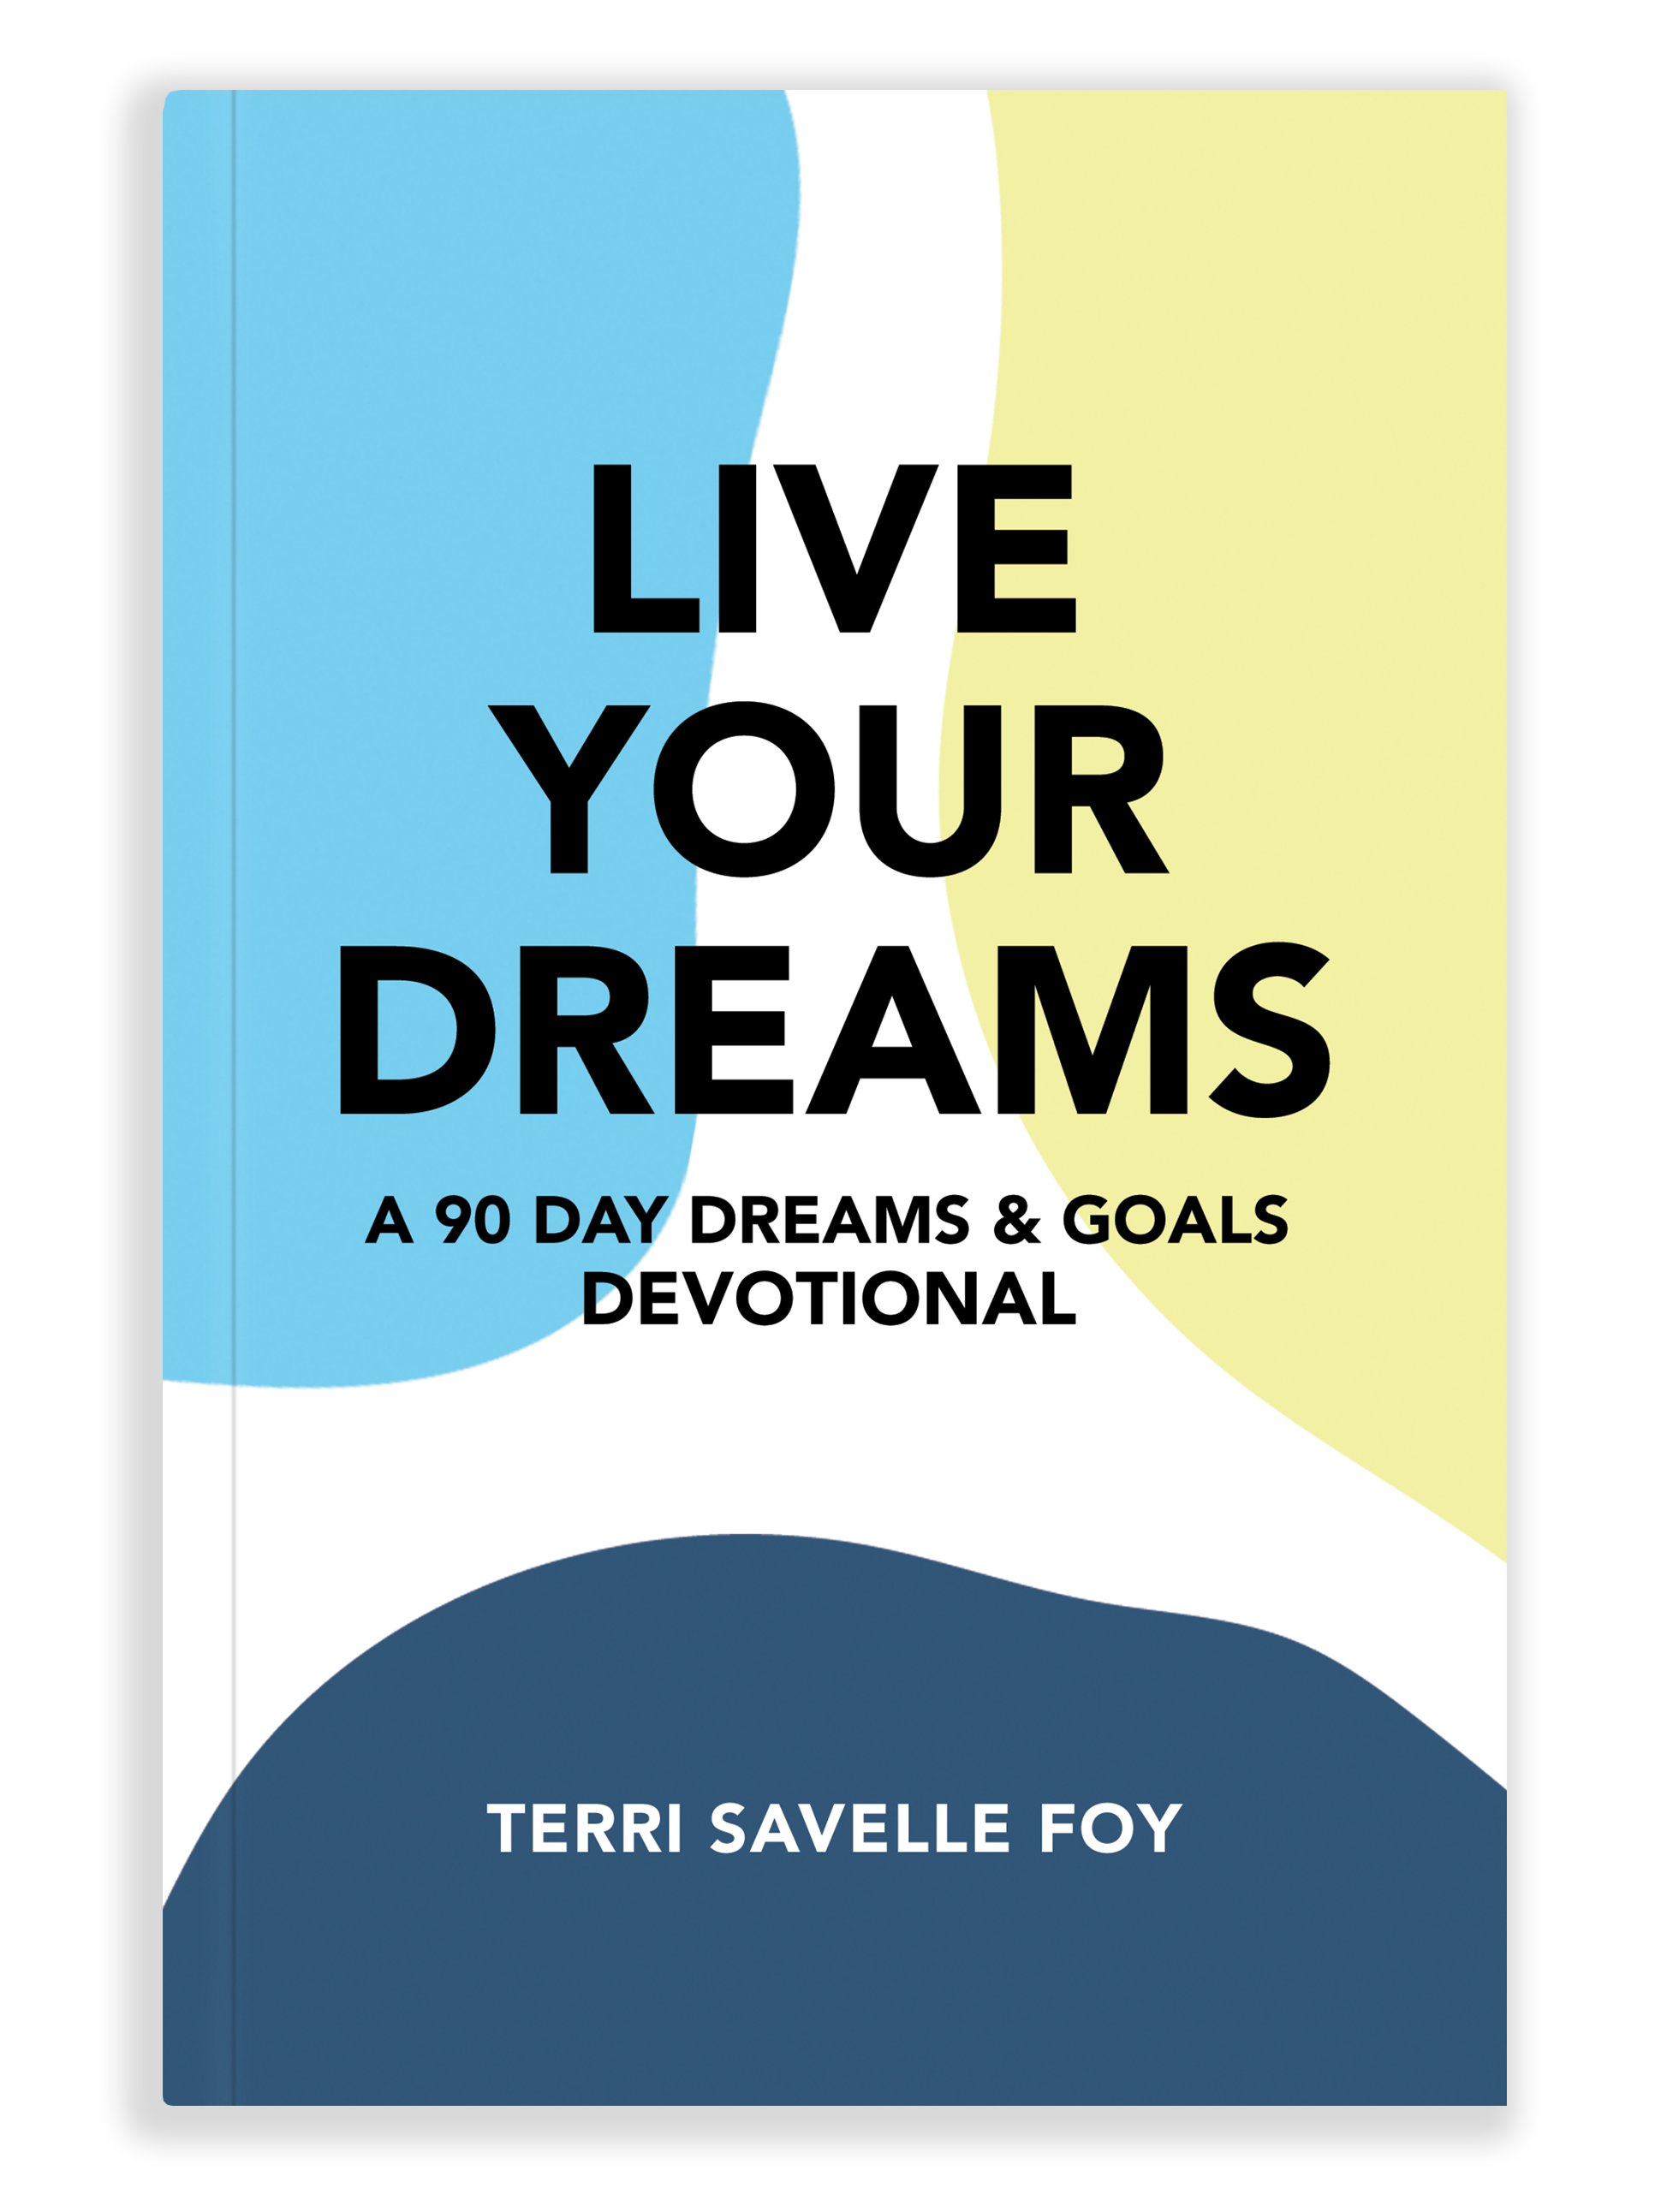 Live Your Dreams Devotional